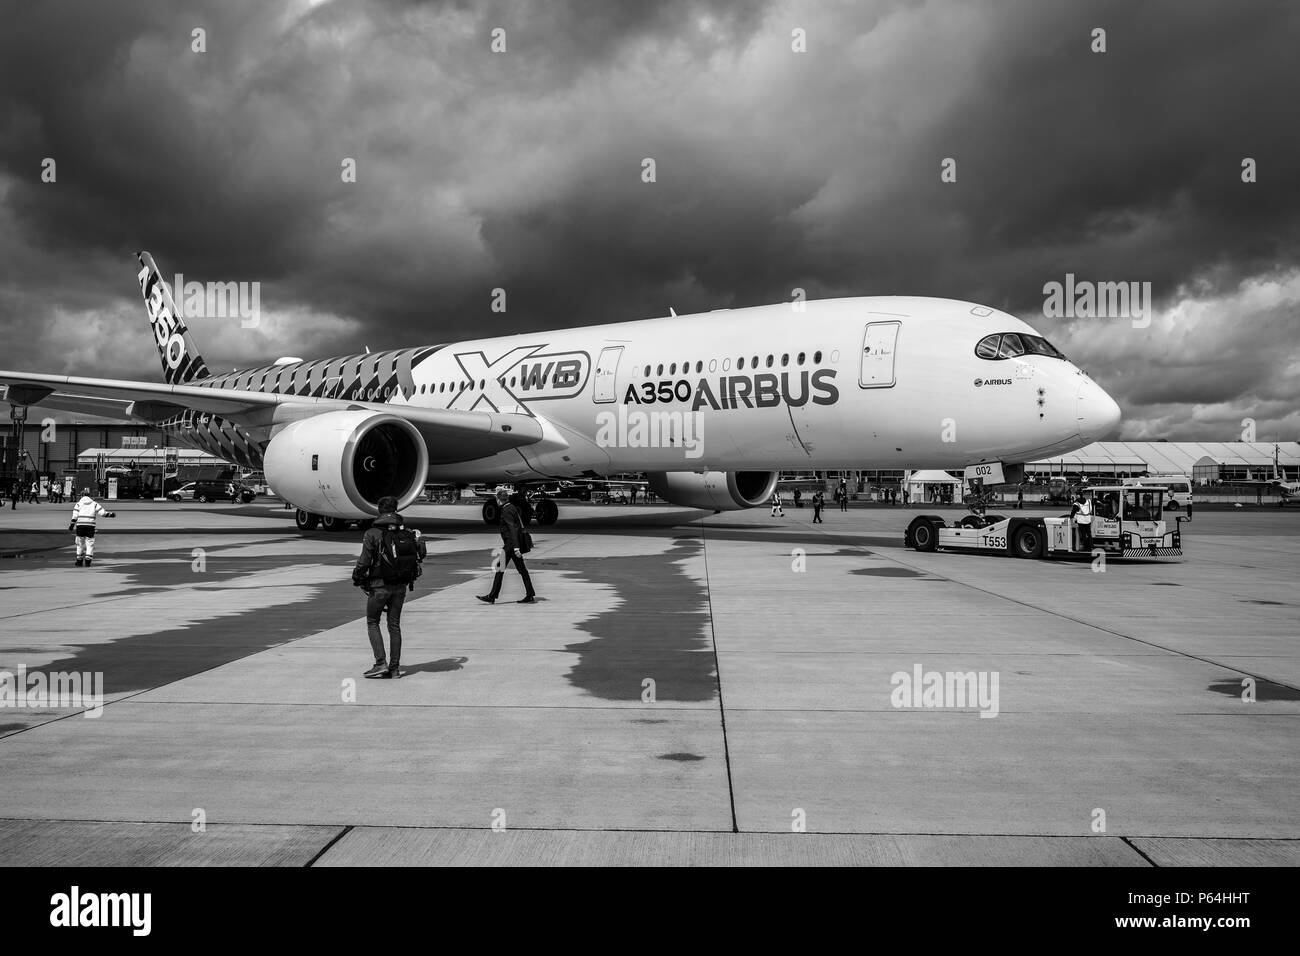 BERLIN, DEUTSCHLAND - 26 April 2018: Wide-body Jet Airliner Airbus A350 XWB auf dem Flugplatz. Schwarz und Weiß. Ausstellung die ILA Berlin Air Show 2018 Stockfoto